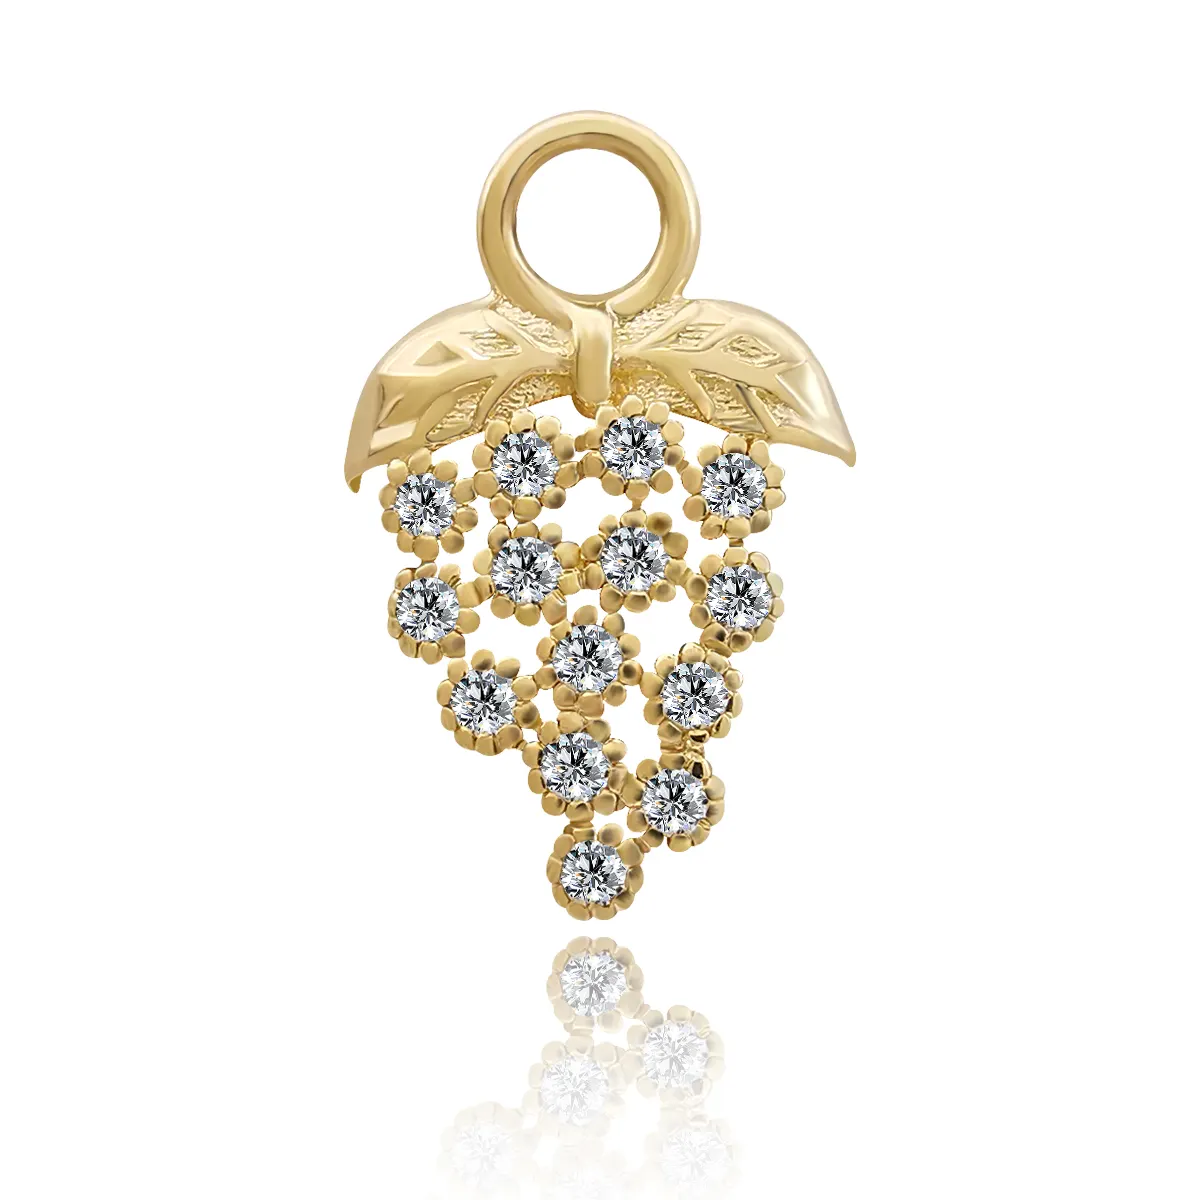 Pingente personalizado OEM ODM Opal personalizado AU585 acessórios de jóias 14K ouro maciço jóias brinco DIY charme